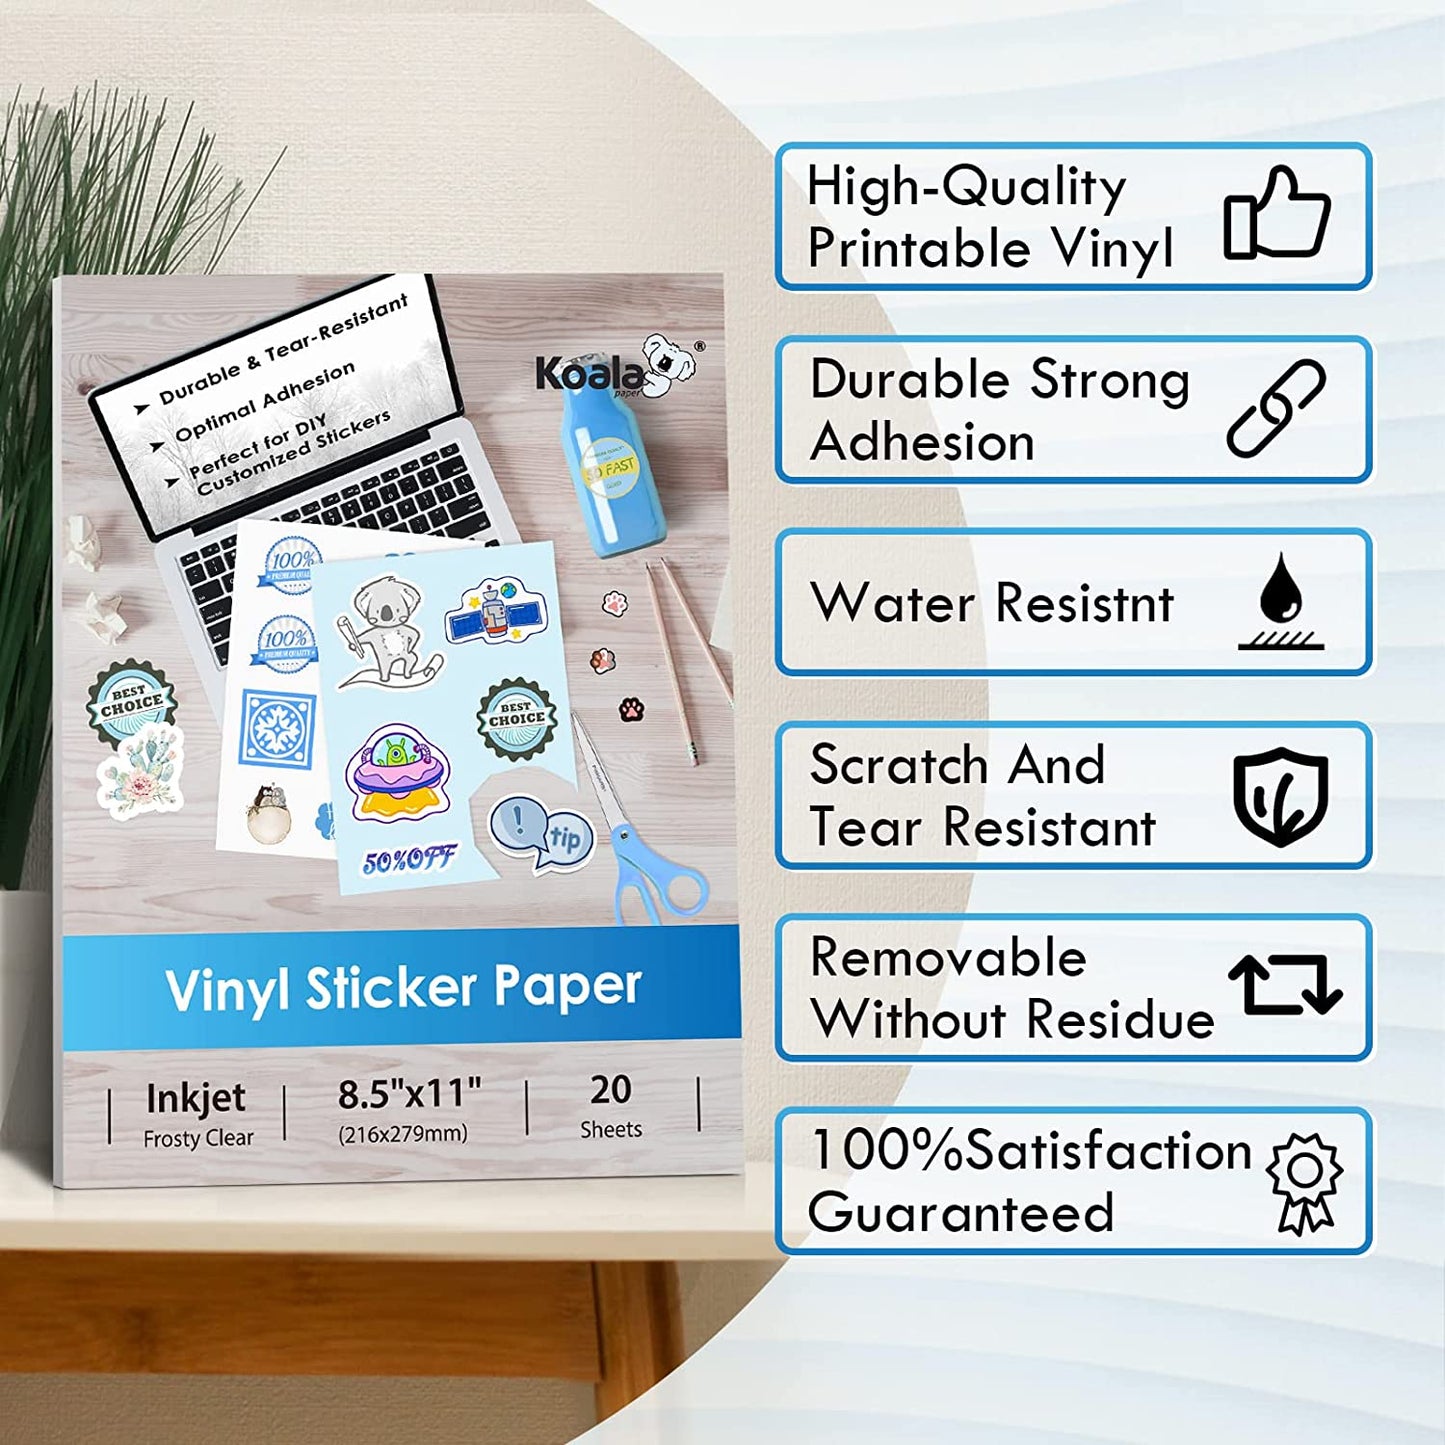 Koala Frosty Clear Printable Vinyl Sticker Paper for Inkjet Printer 20 Sheets